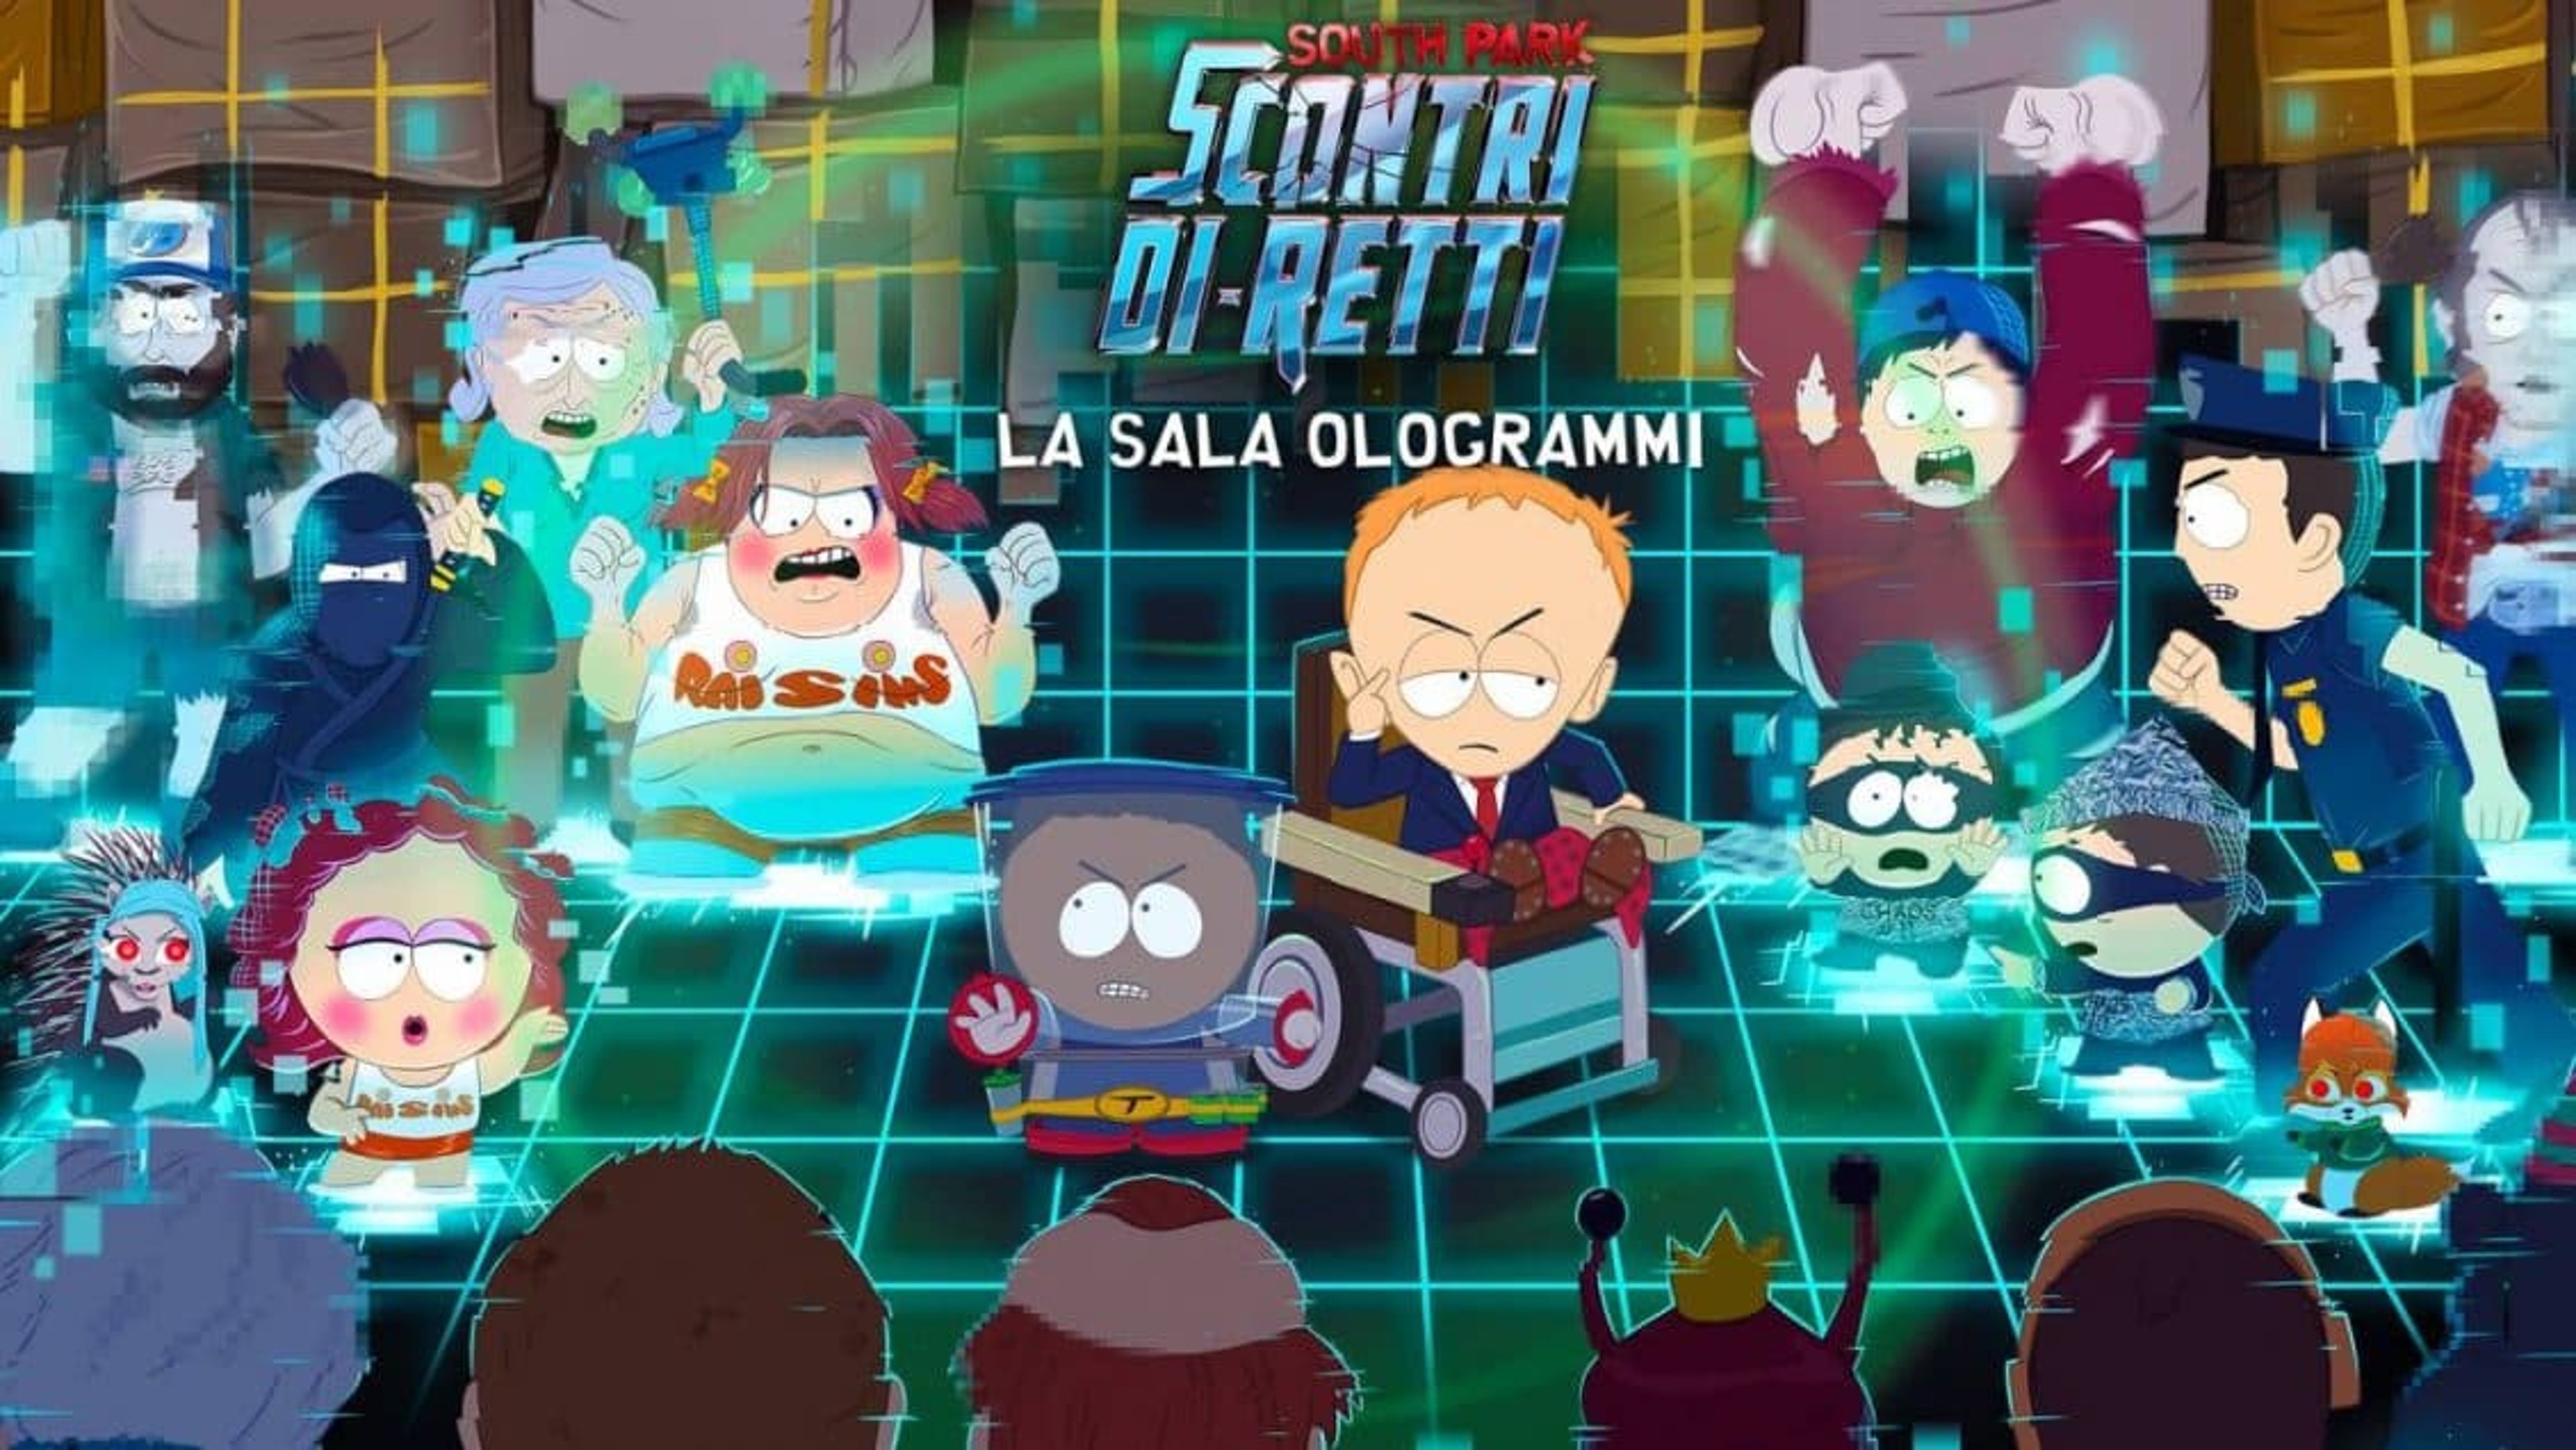 South Park Scontri Di-Retti: il DLC è “La sala ologrammi” è ora disponibile. Copertina